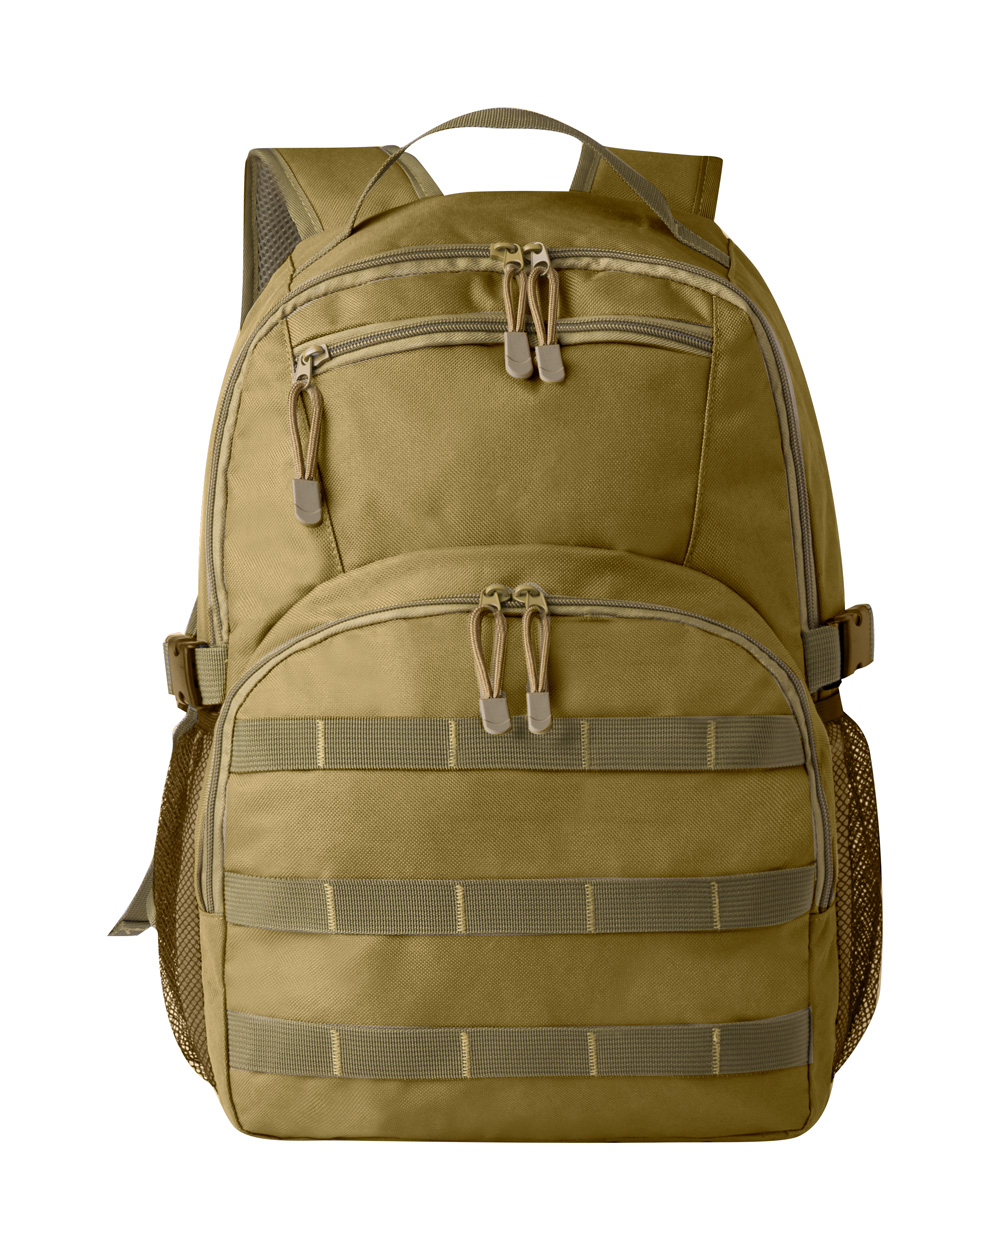 Salced backpack - brown